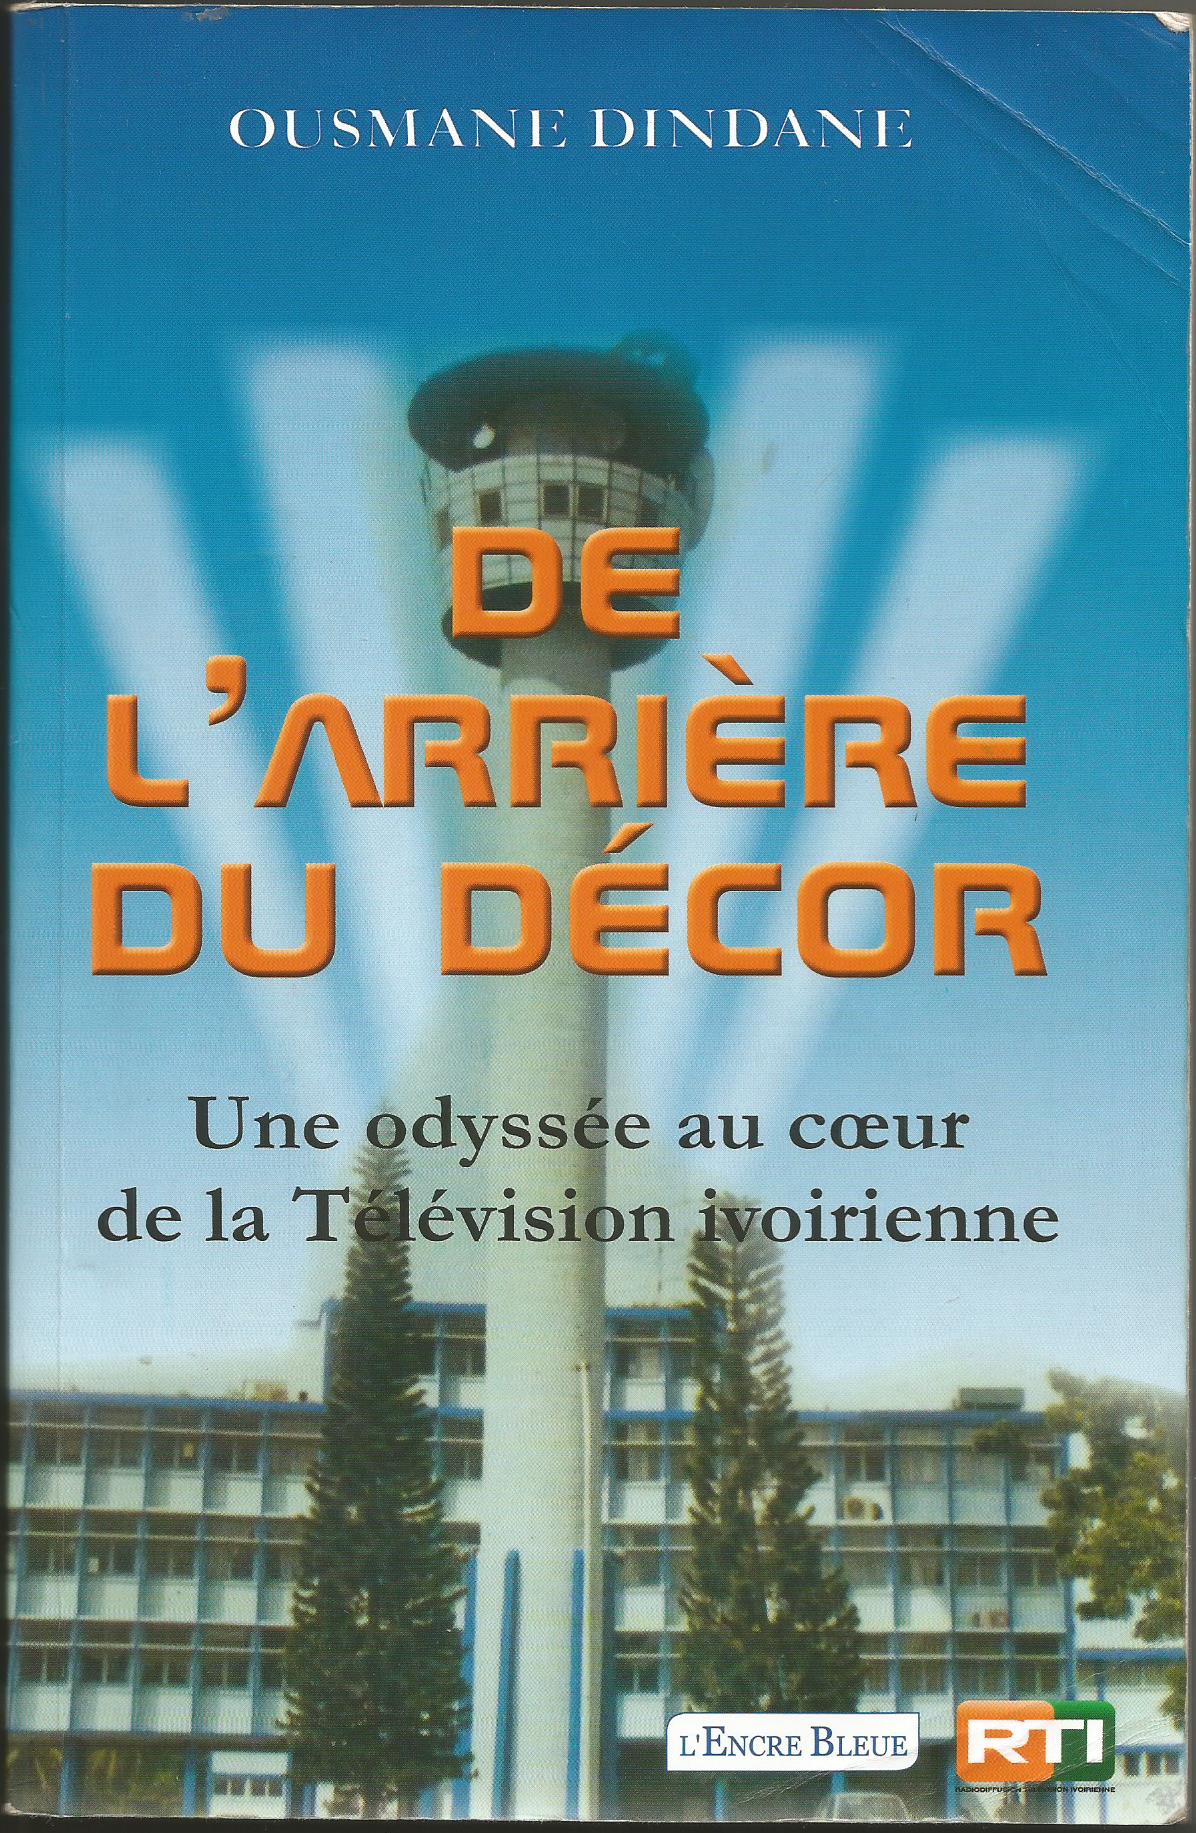 Télévision ivoirienne